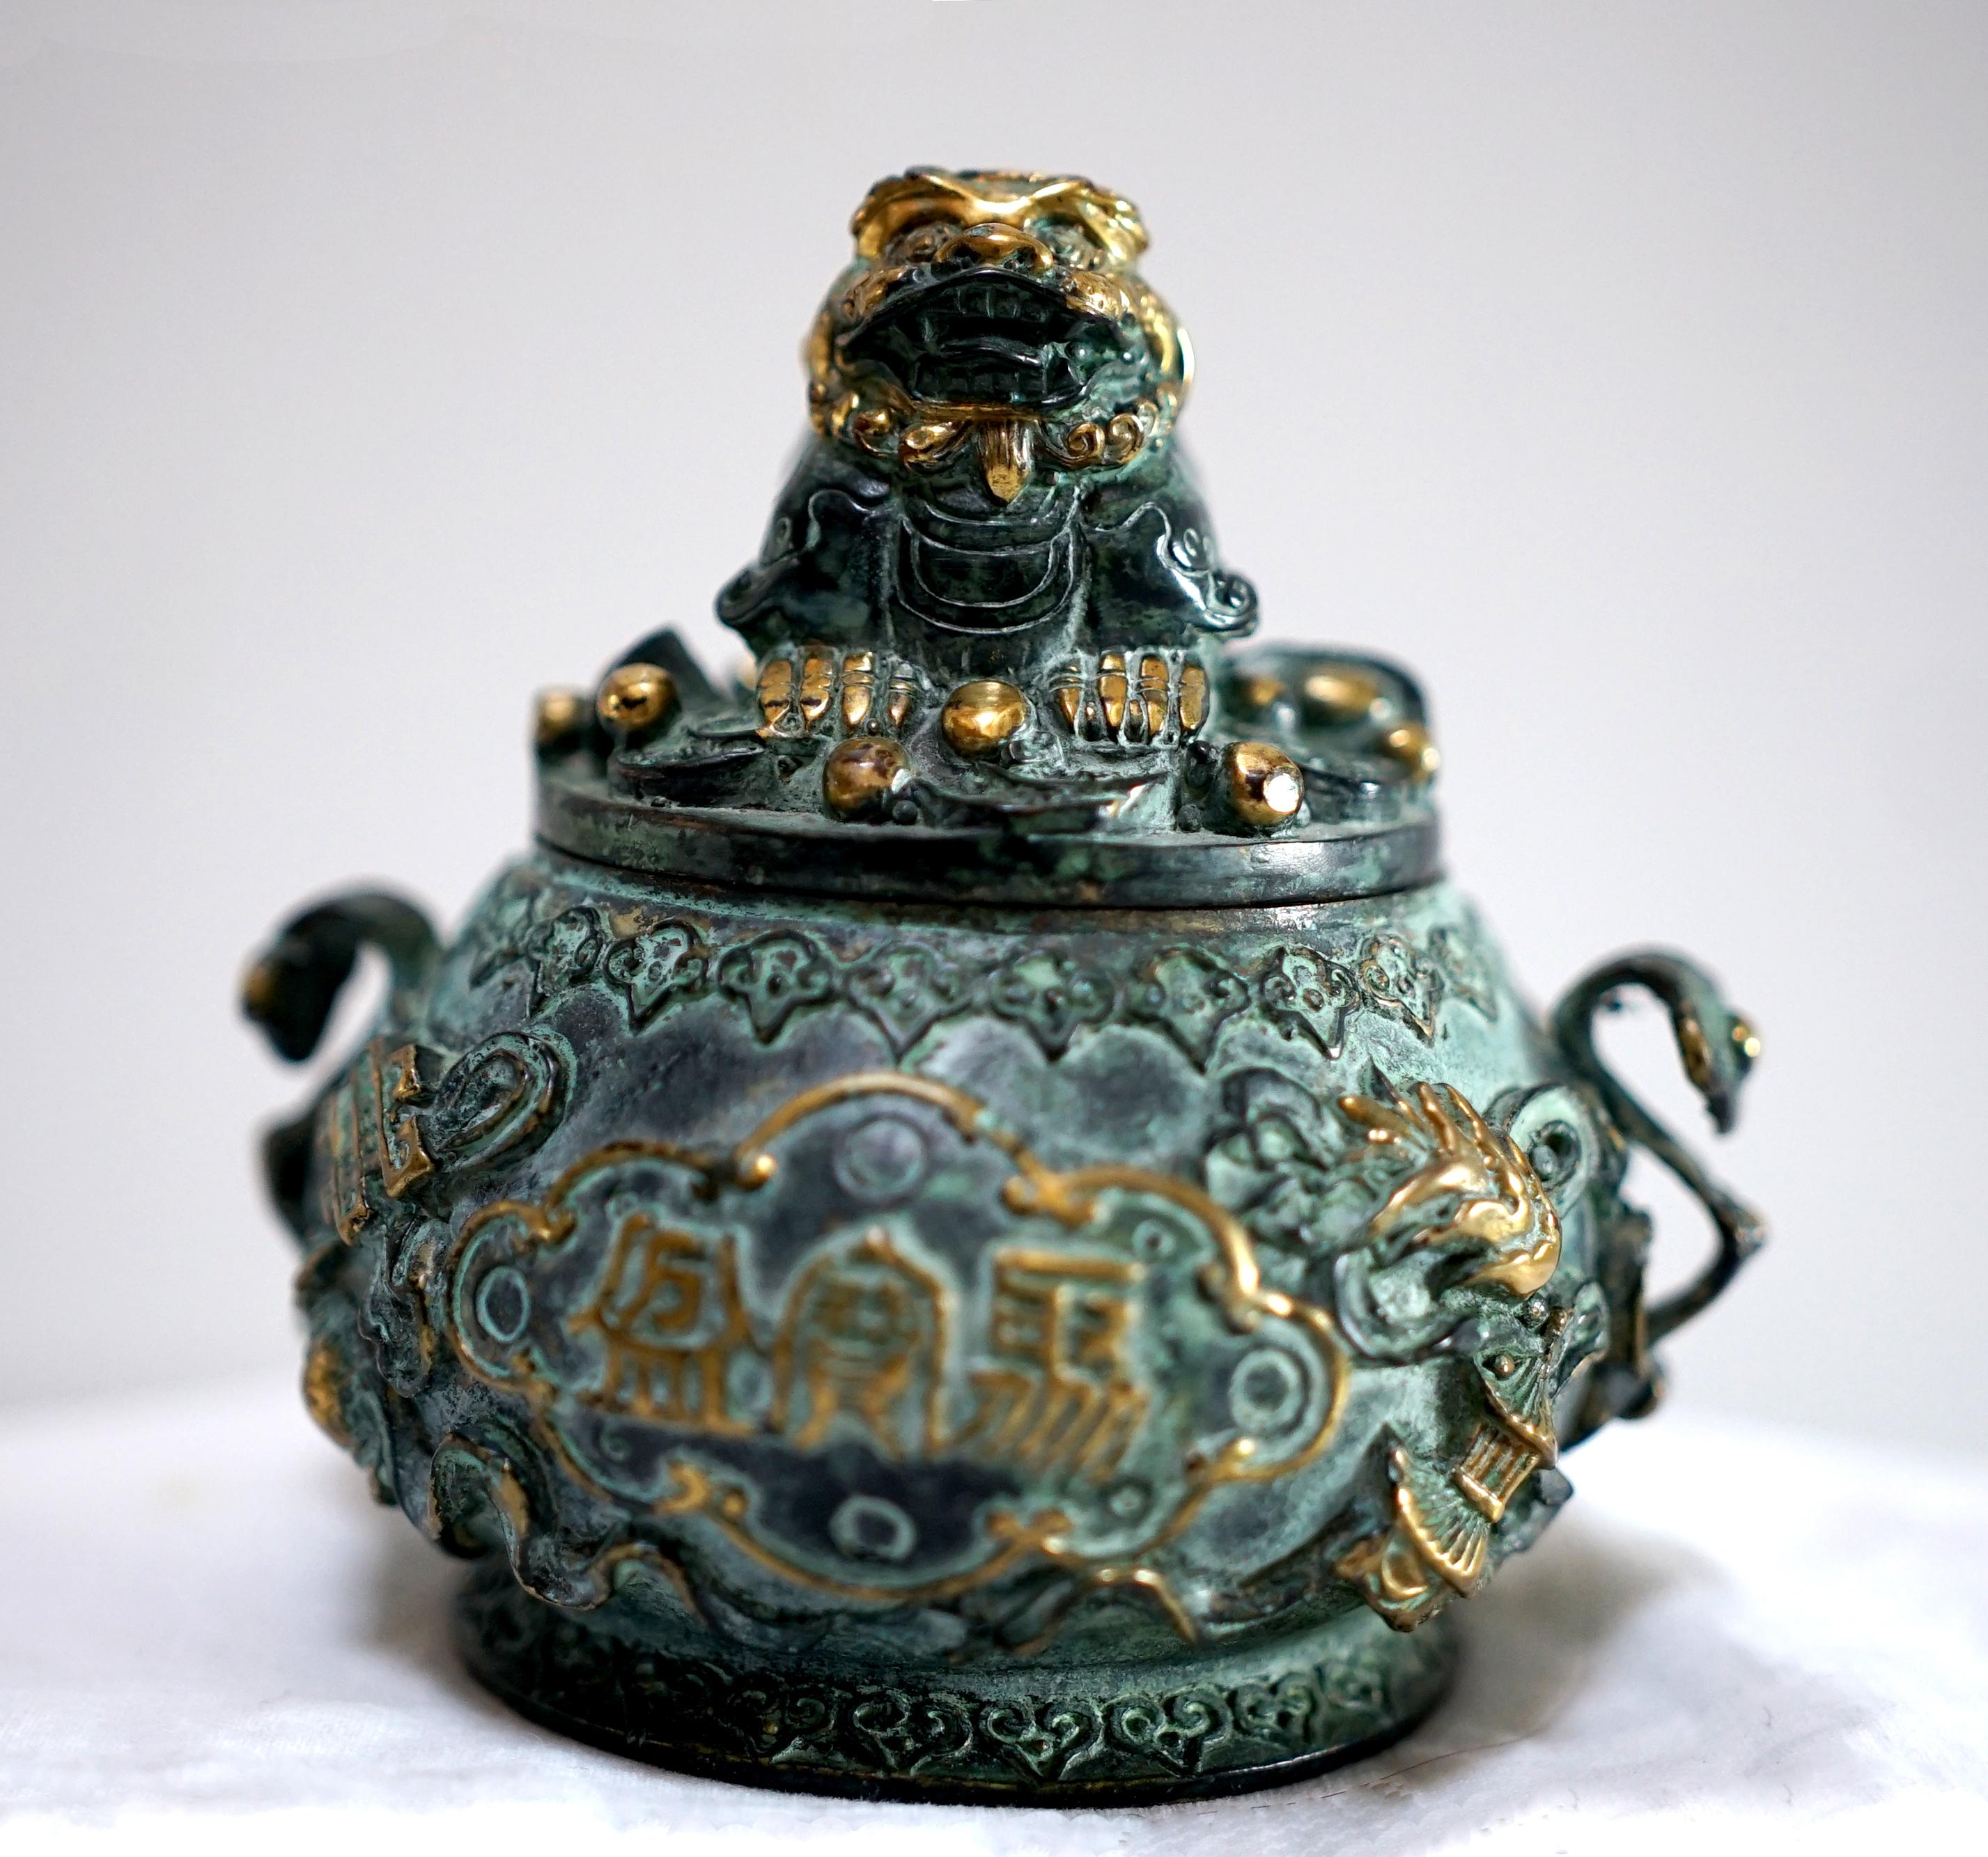 Les détails en bronze et dorés se combinent pour faire de cet encensoir chinois un magnifique accent décoratif en bronze moulé.  Le bol et le couvercle sont moulés avec divers objets, petits et brillants comme un poisson, avec d'autres objets et